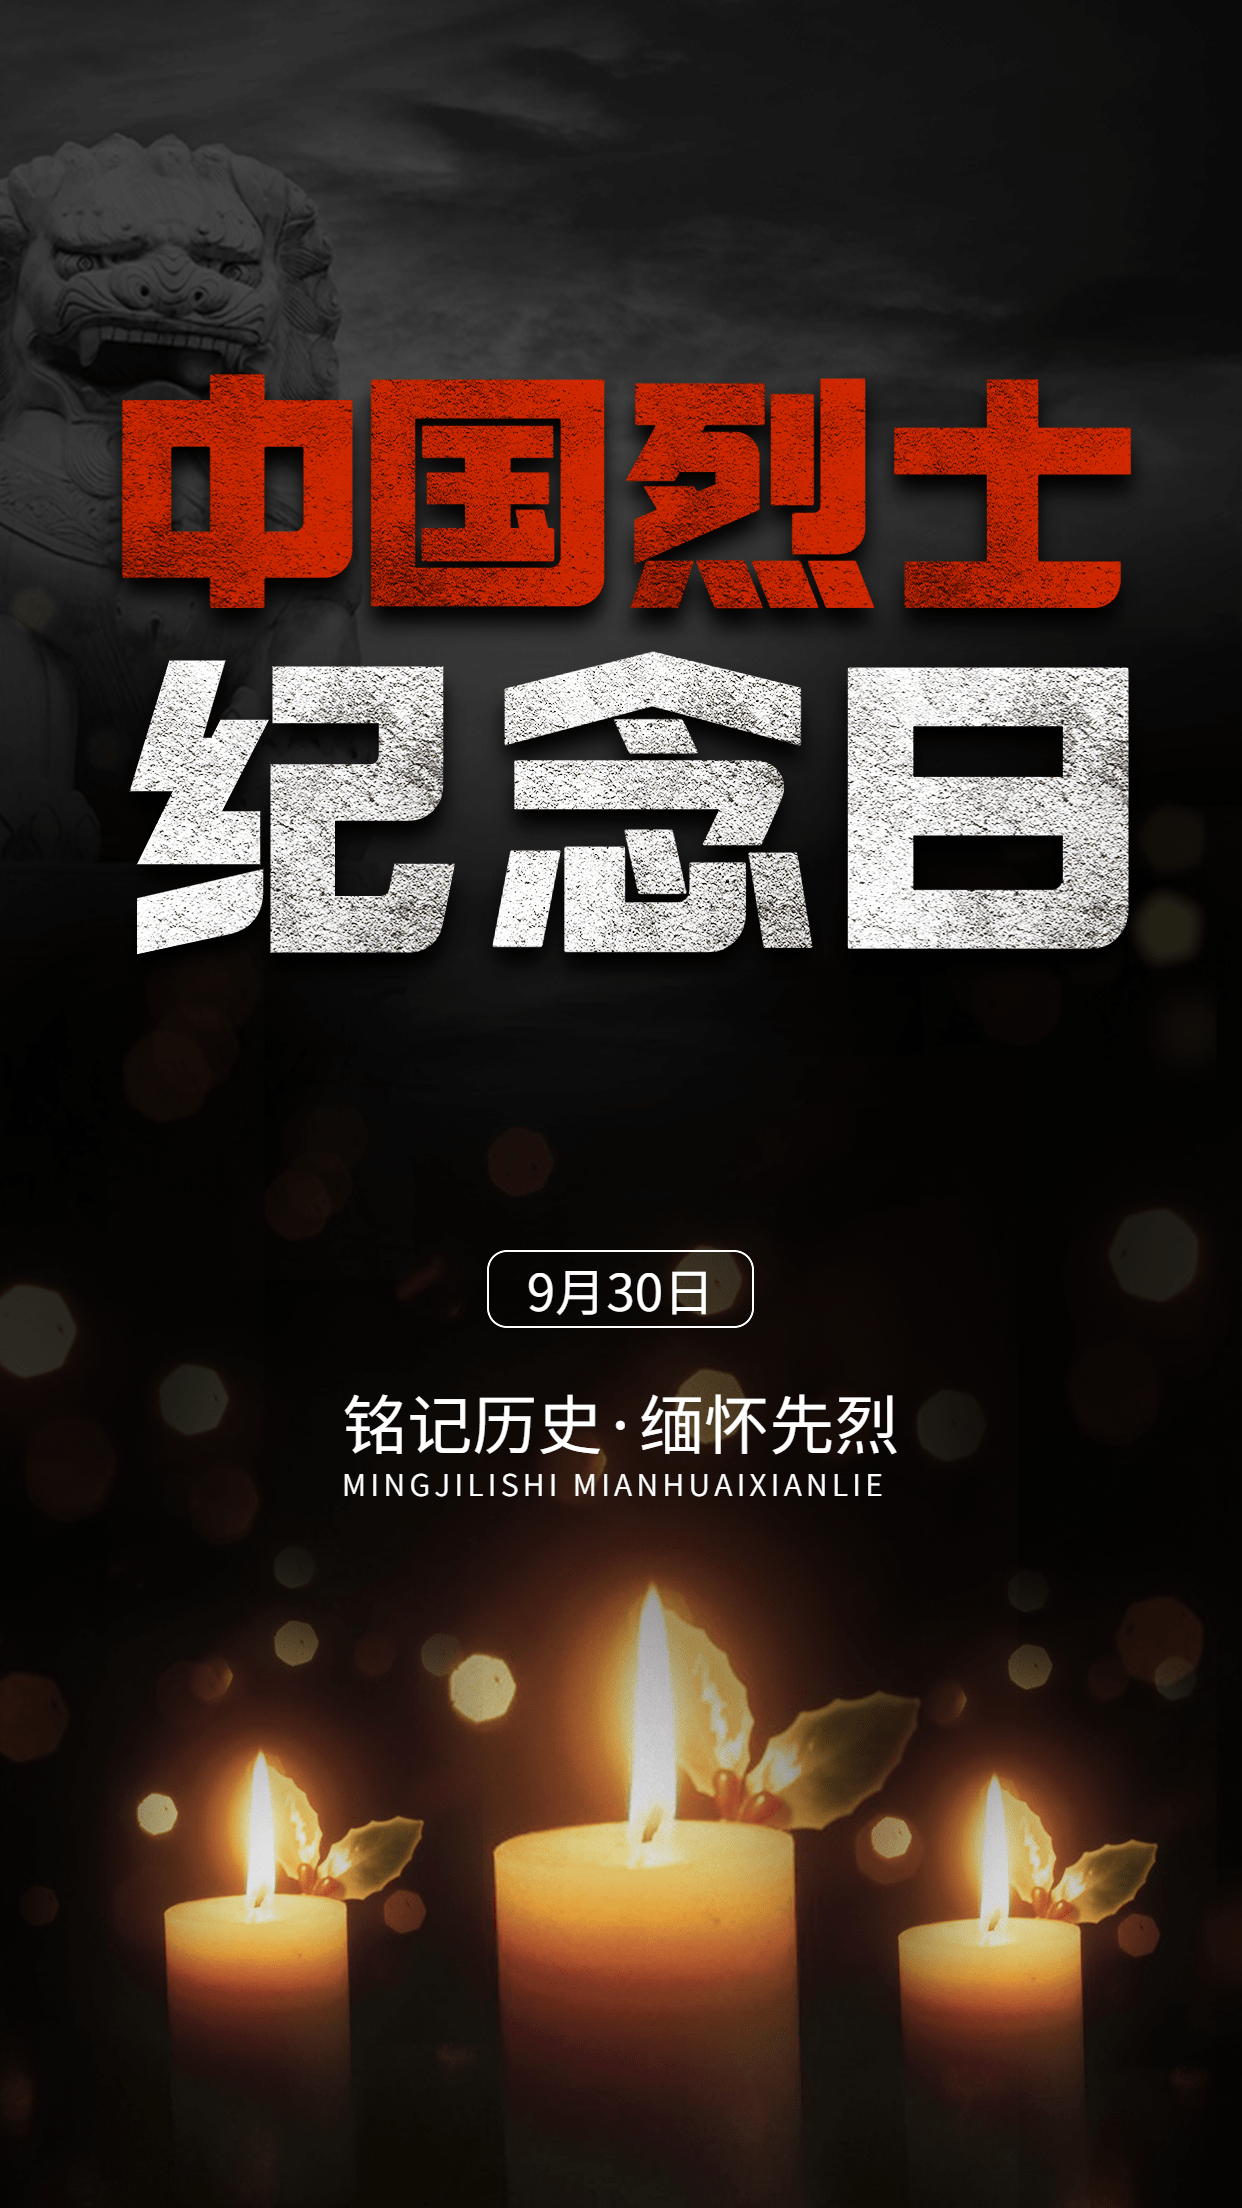 中国烈士纪念日节日宣传排版手机海报预览效果